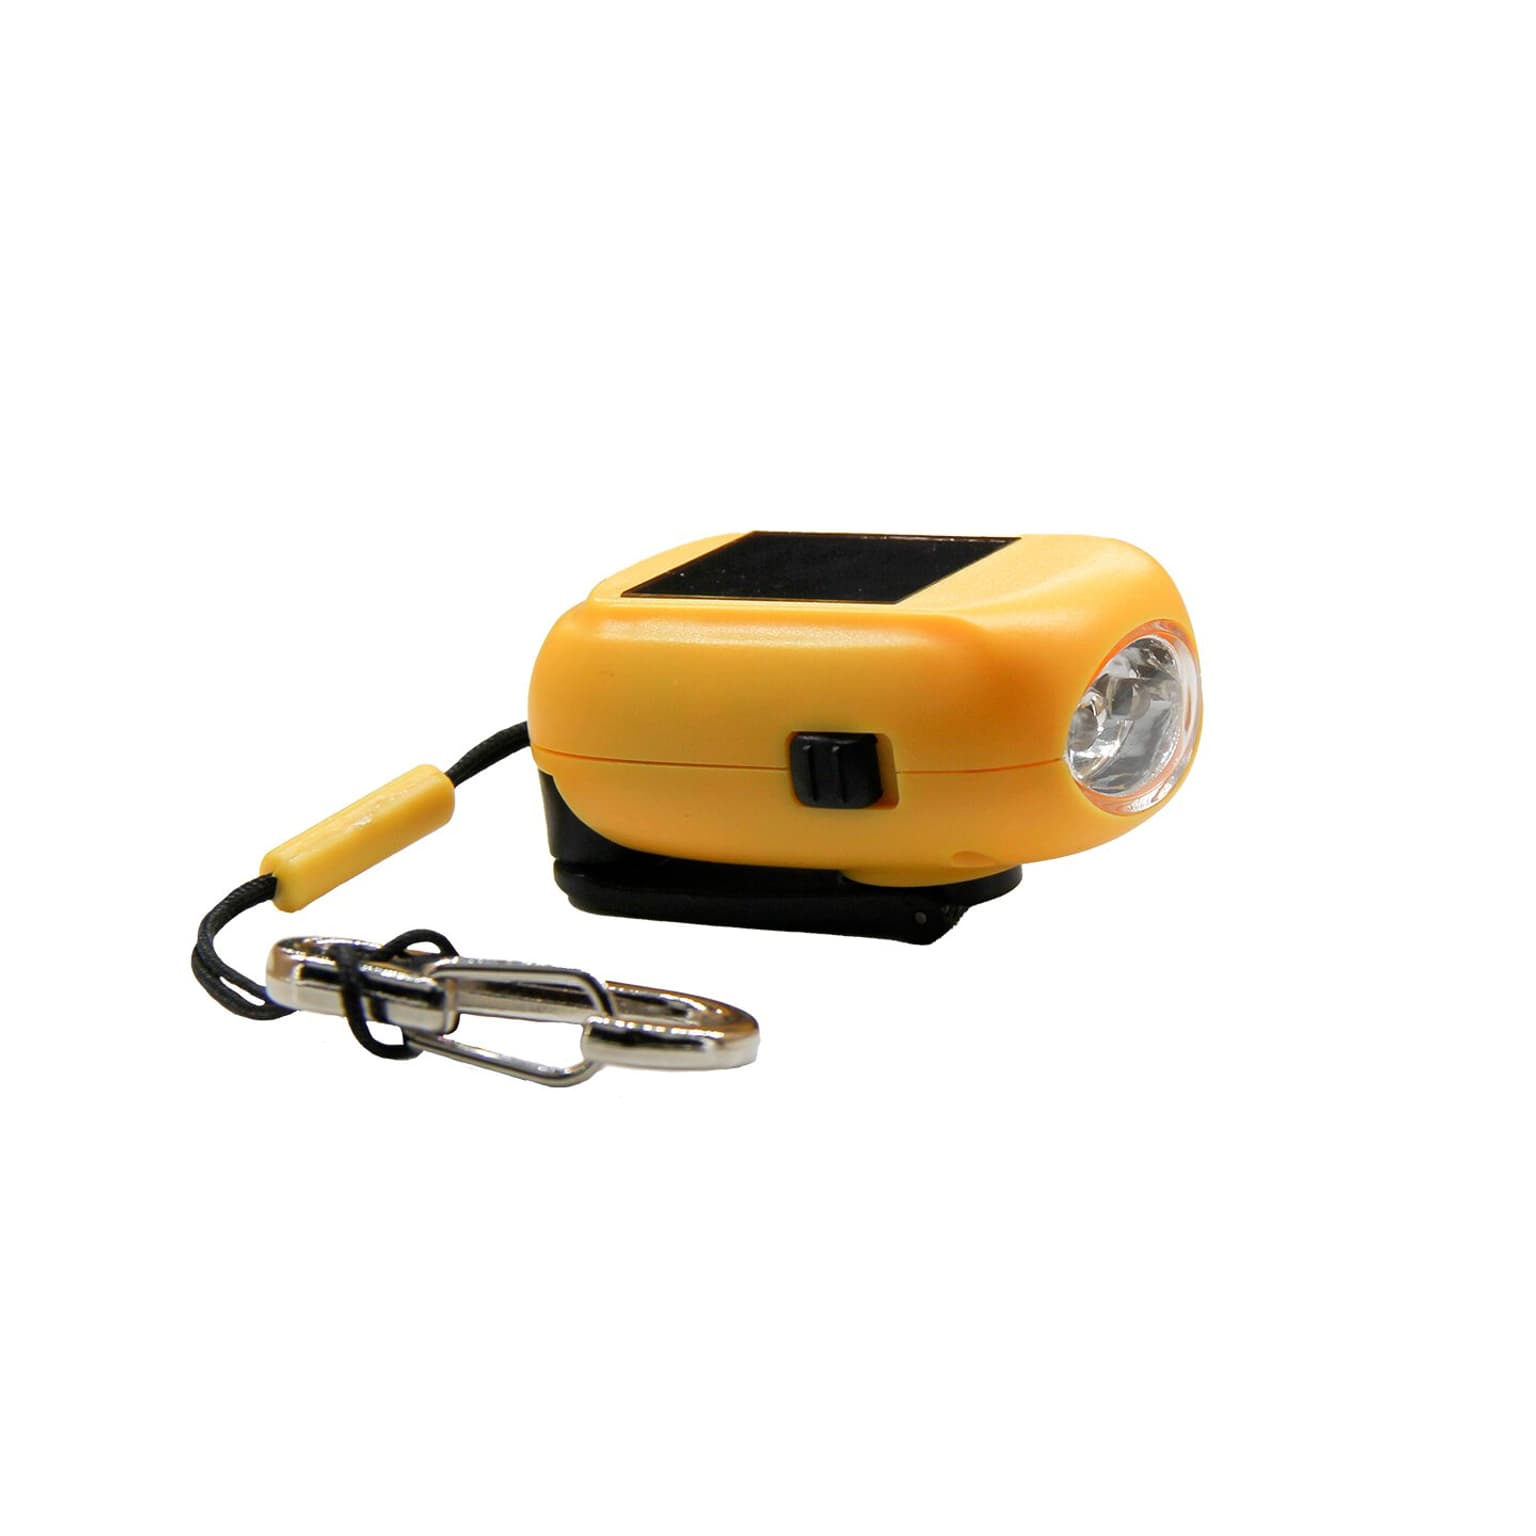 Essential Elements Essential Elements Mini Taschenlampe Recycled inkl. Karabiner Taschenlampe giallo 1